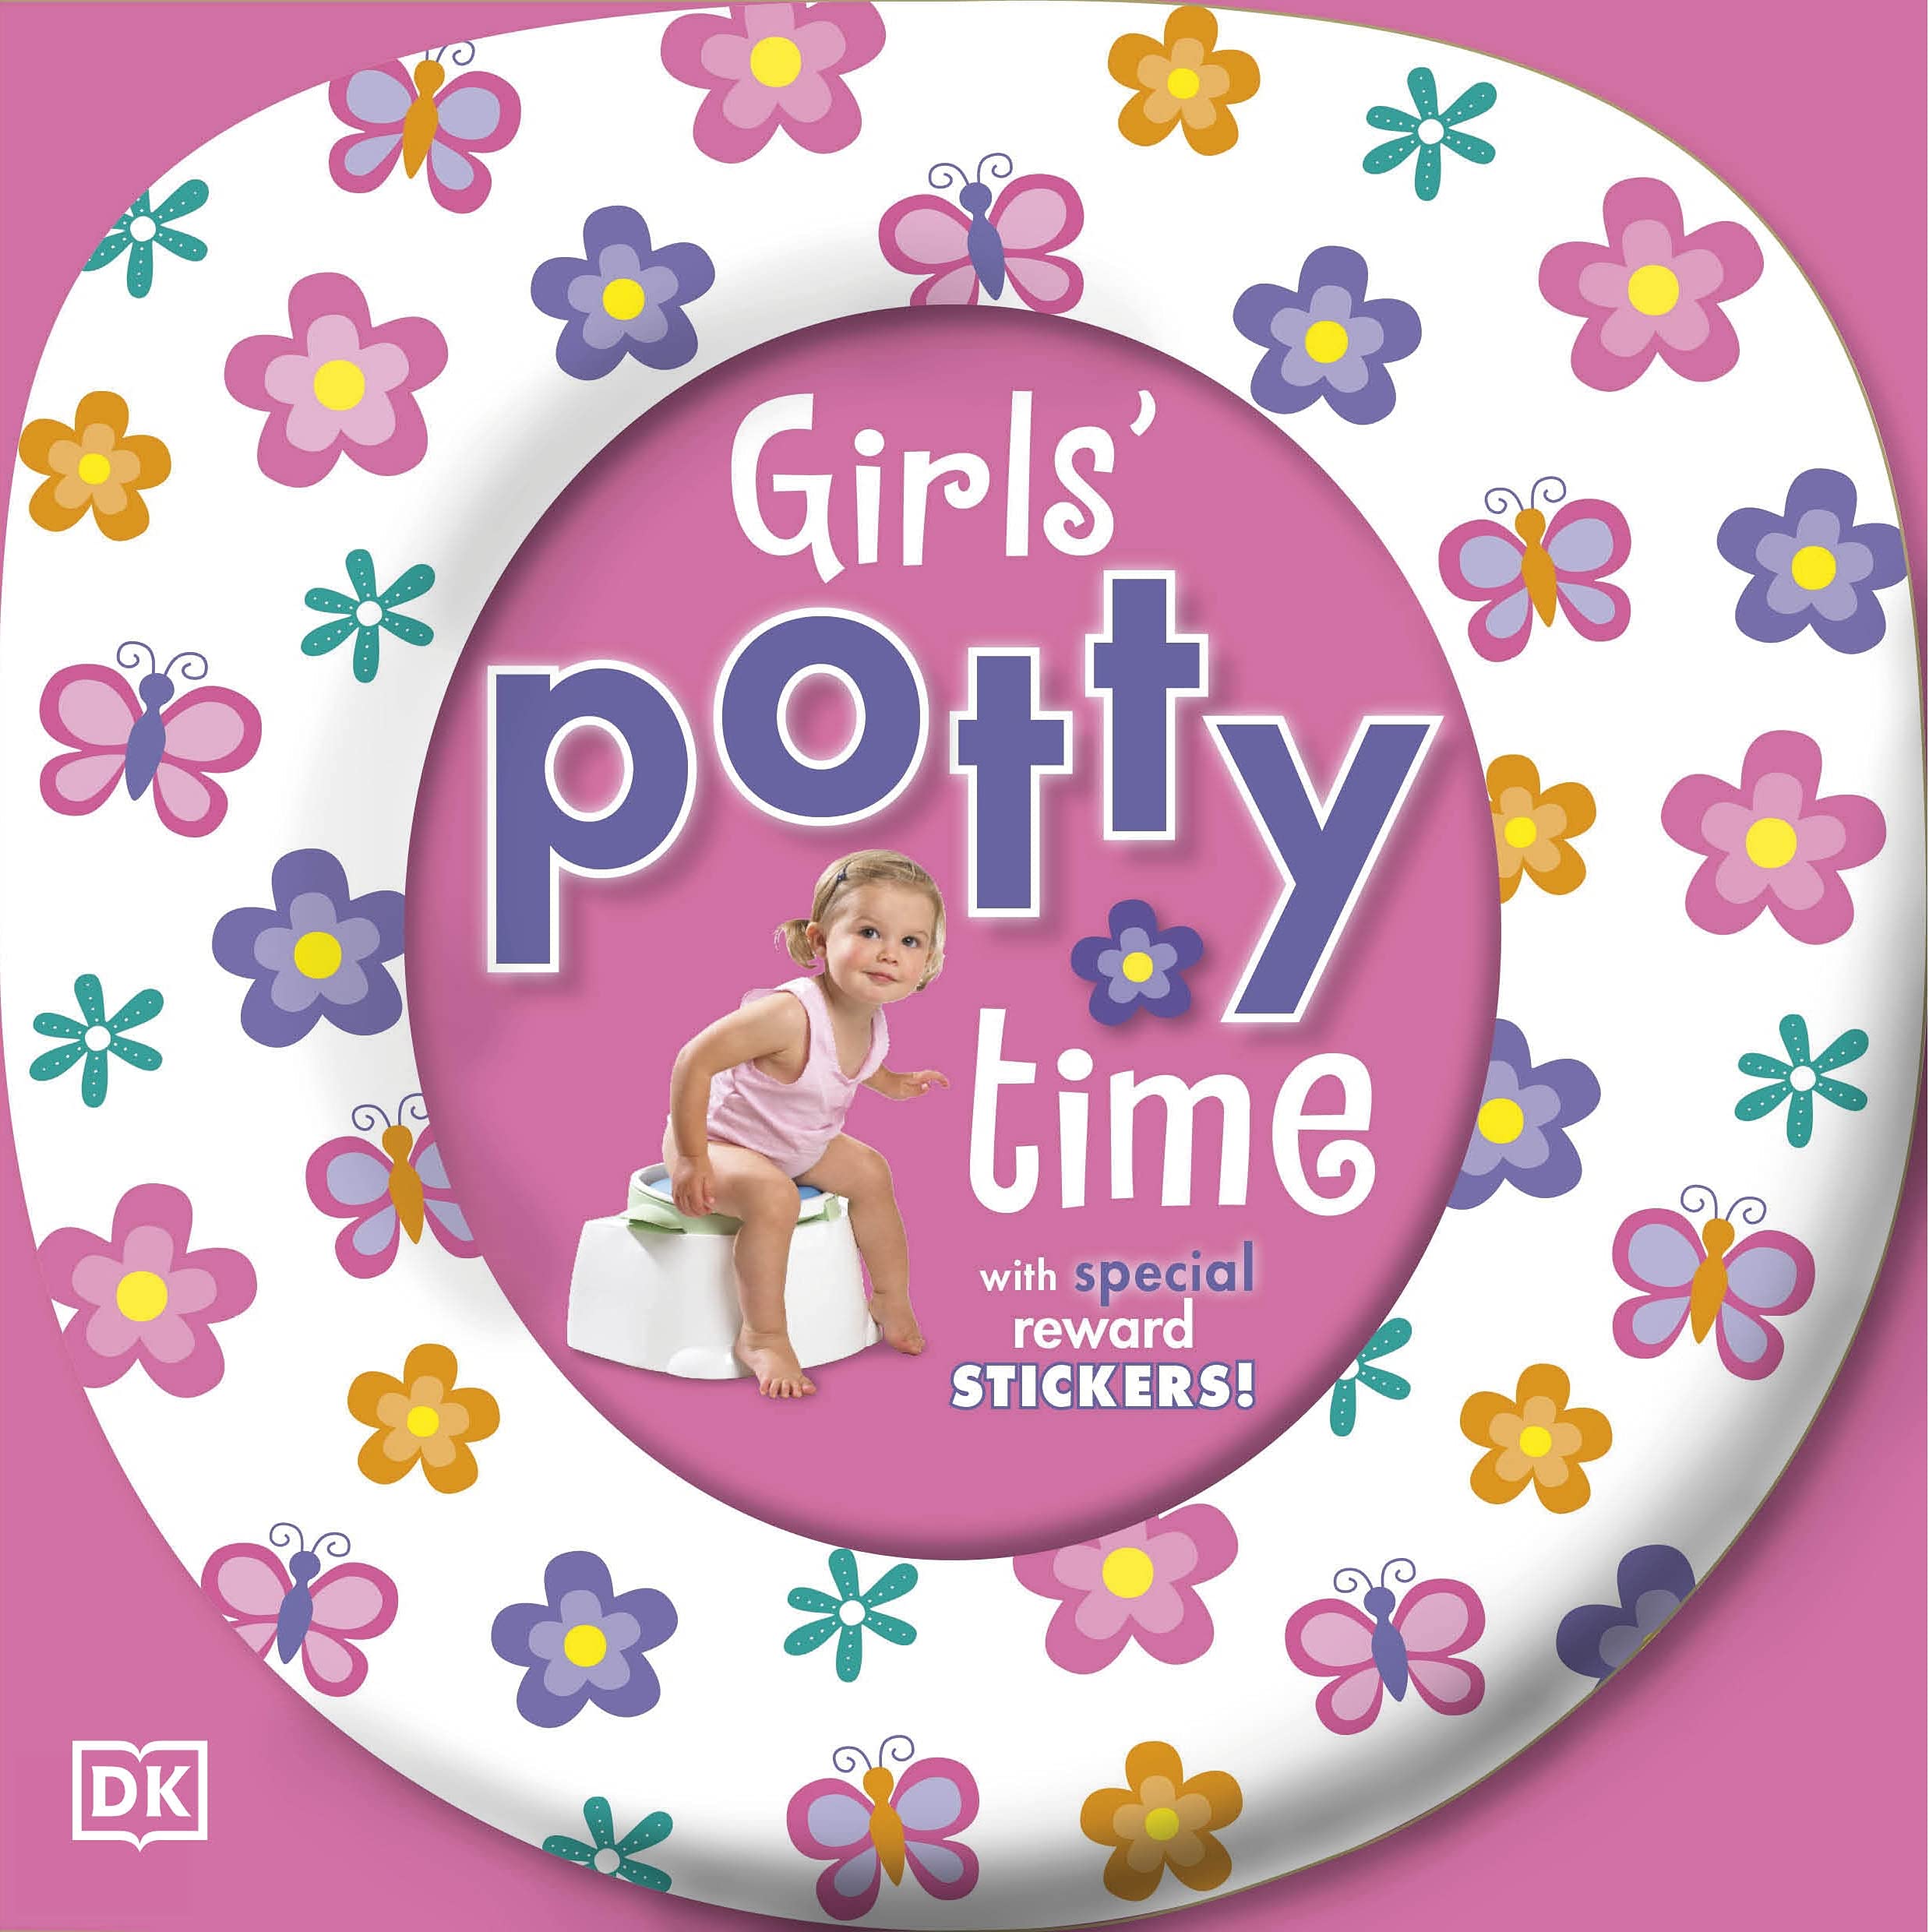 Girls' Potty Time with reward stickers